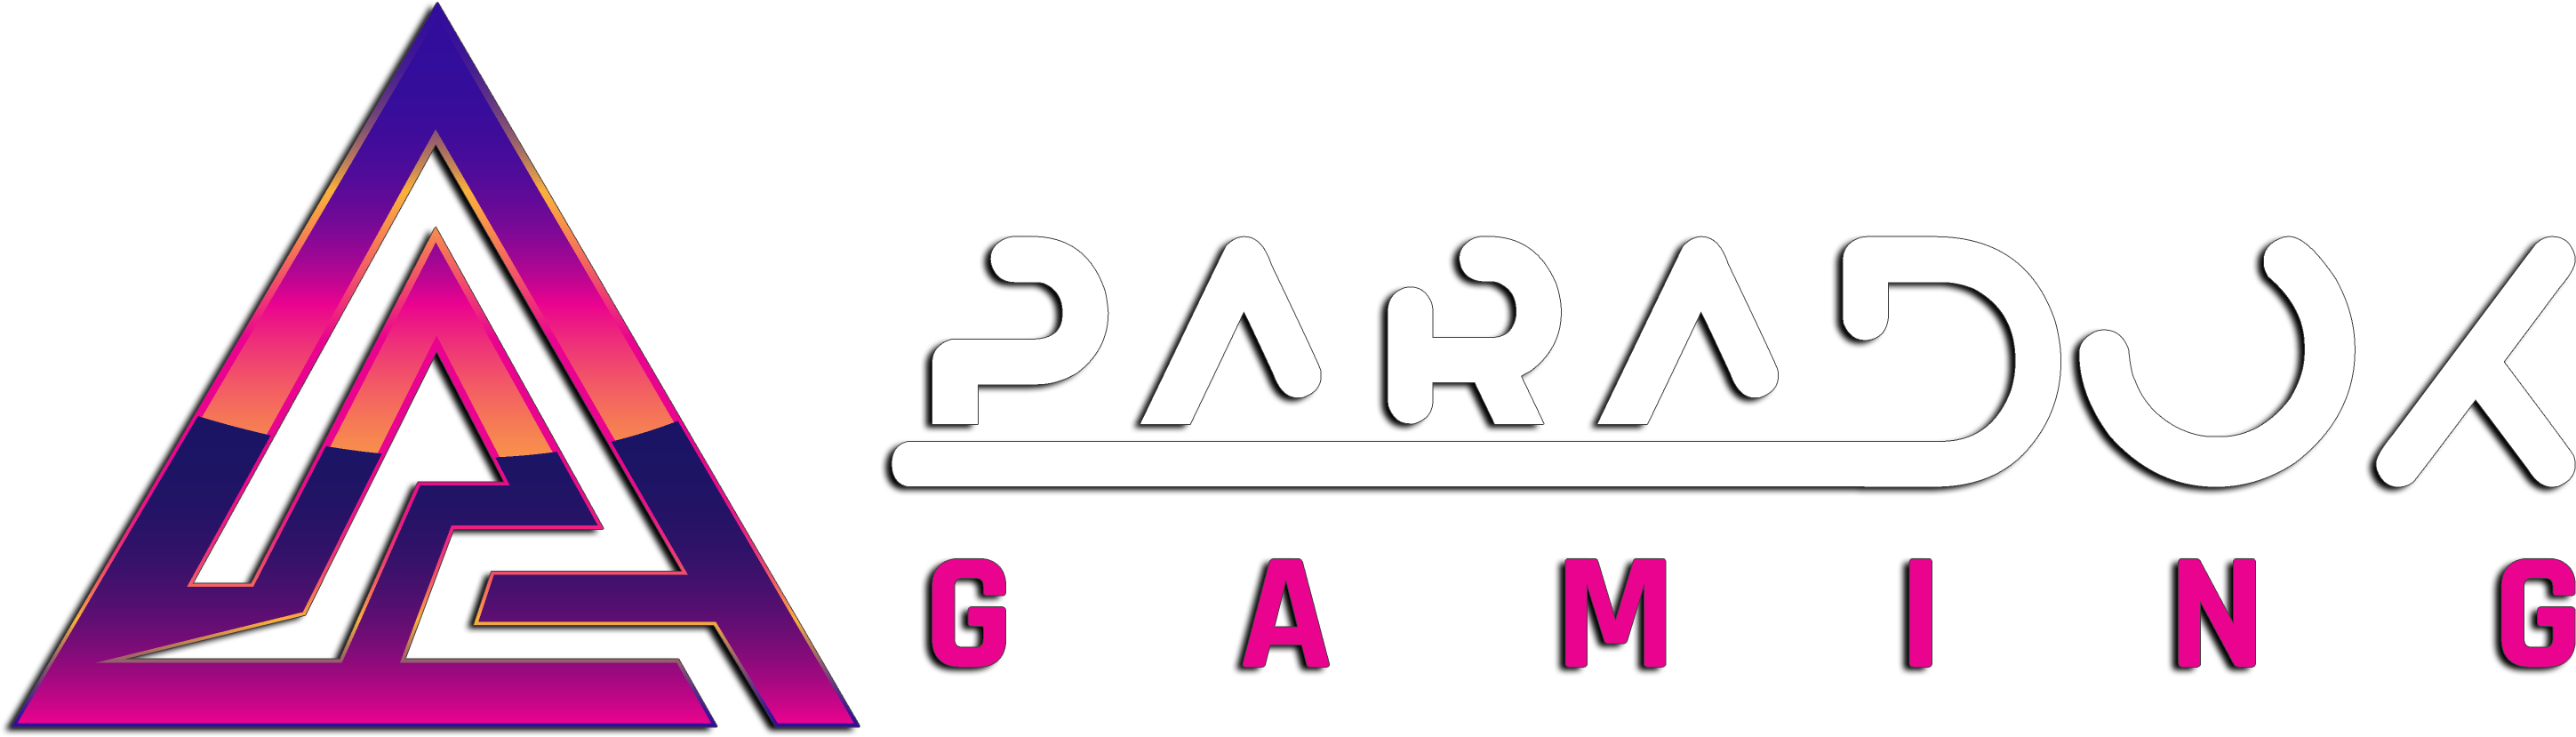 Paradox-Gaming-Logo-Horizontal-trim2.png